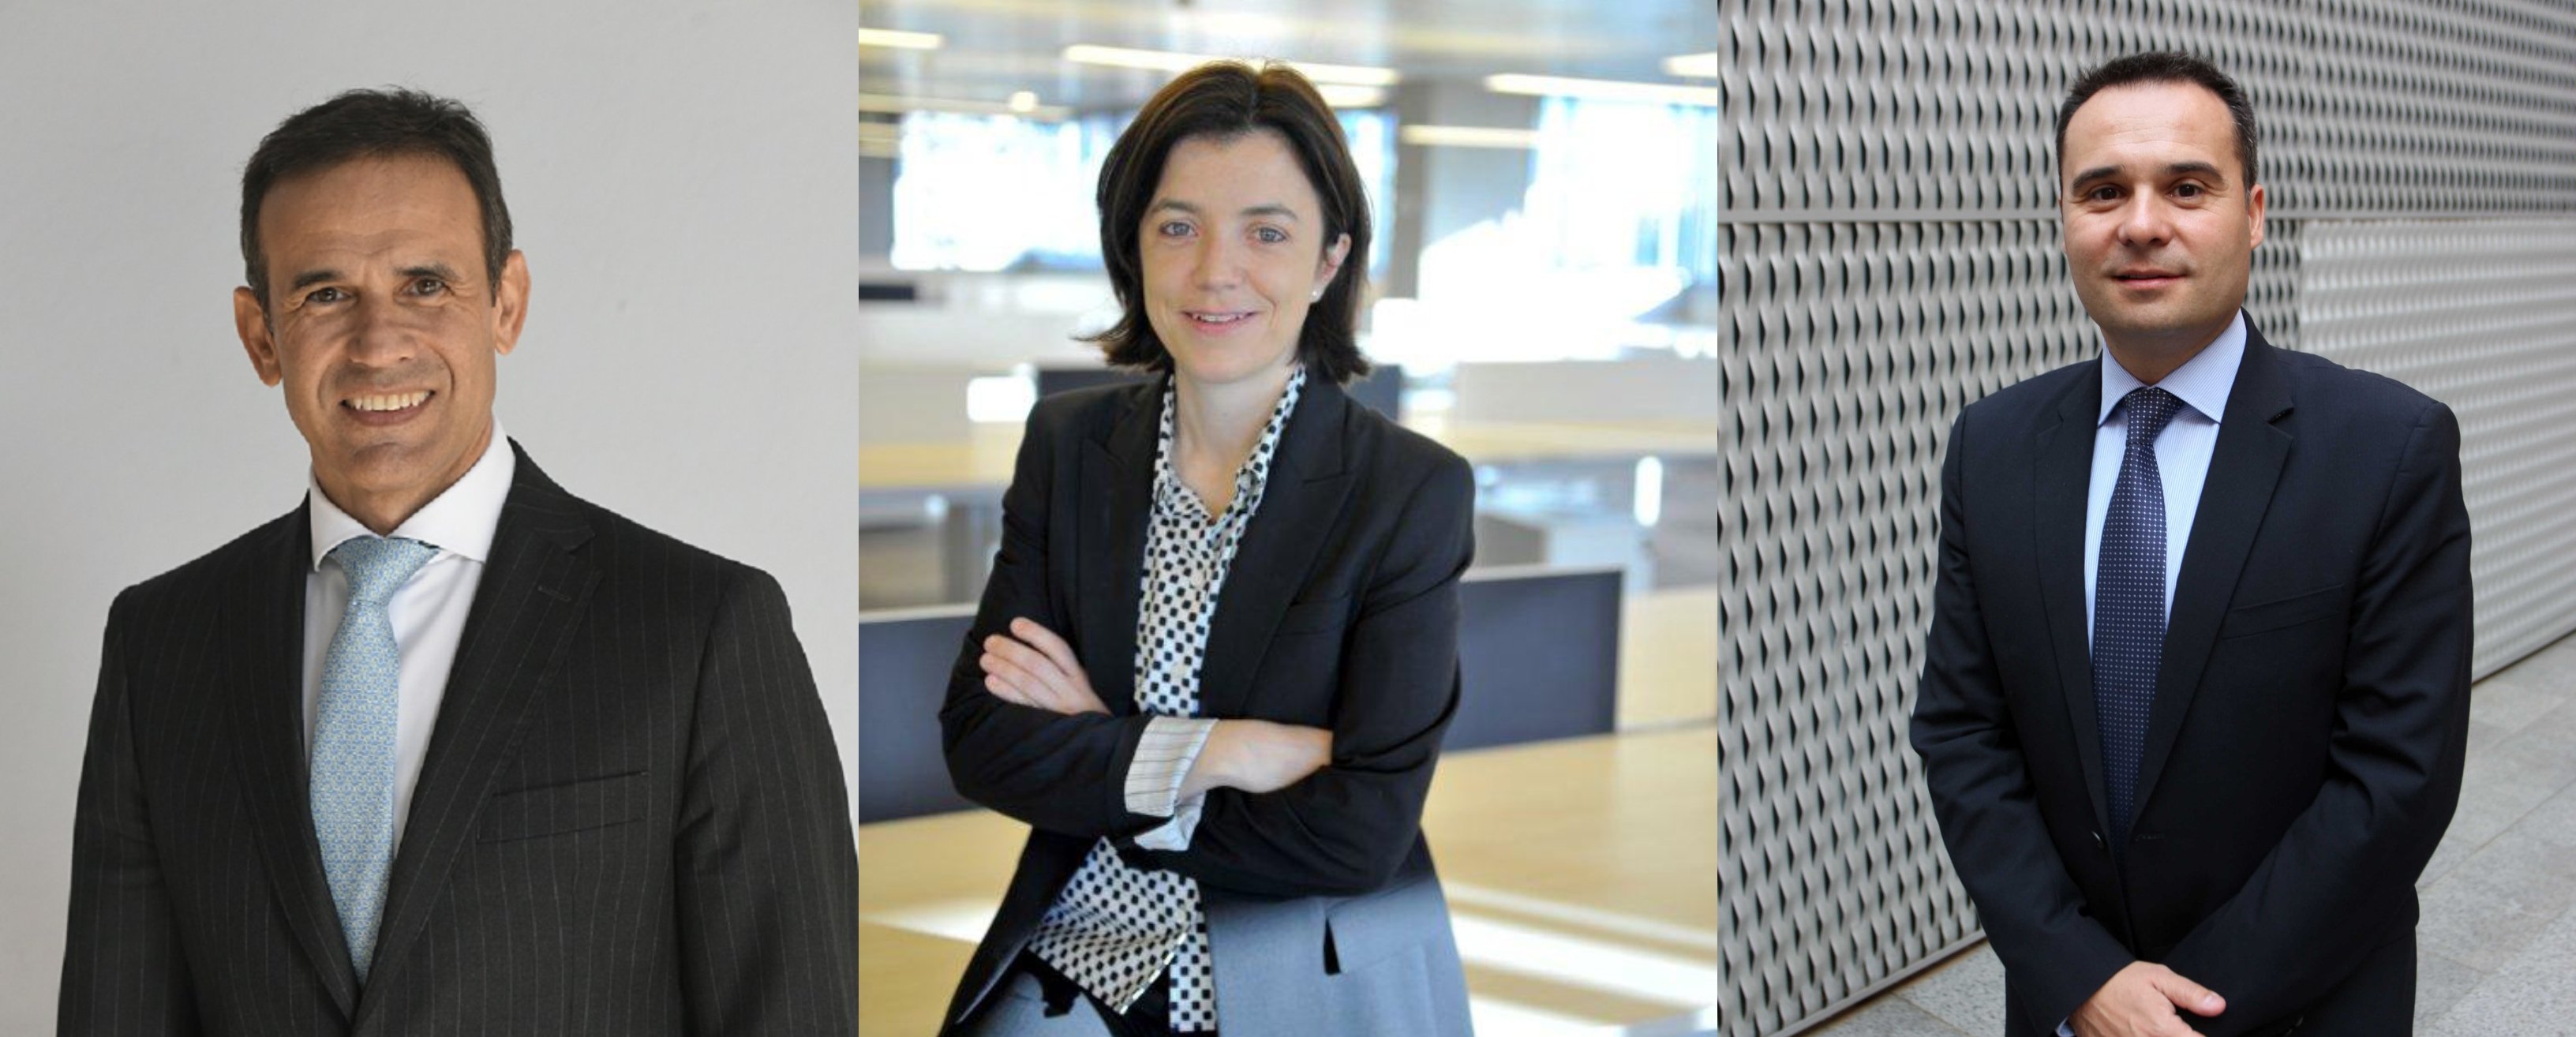 CaixaBank releva a Alcaraz y nombra a tres nuevos directores de negocio